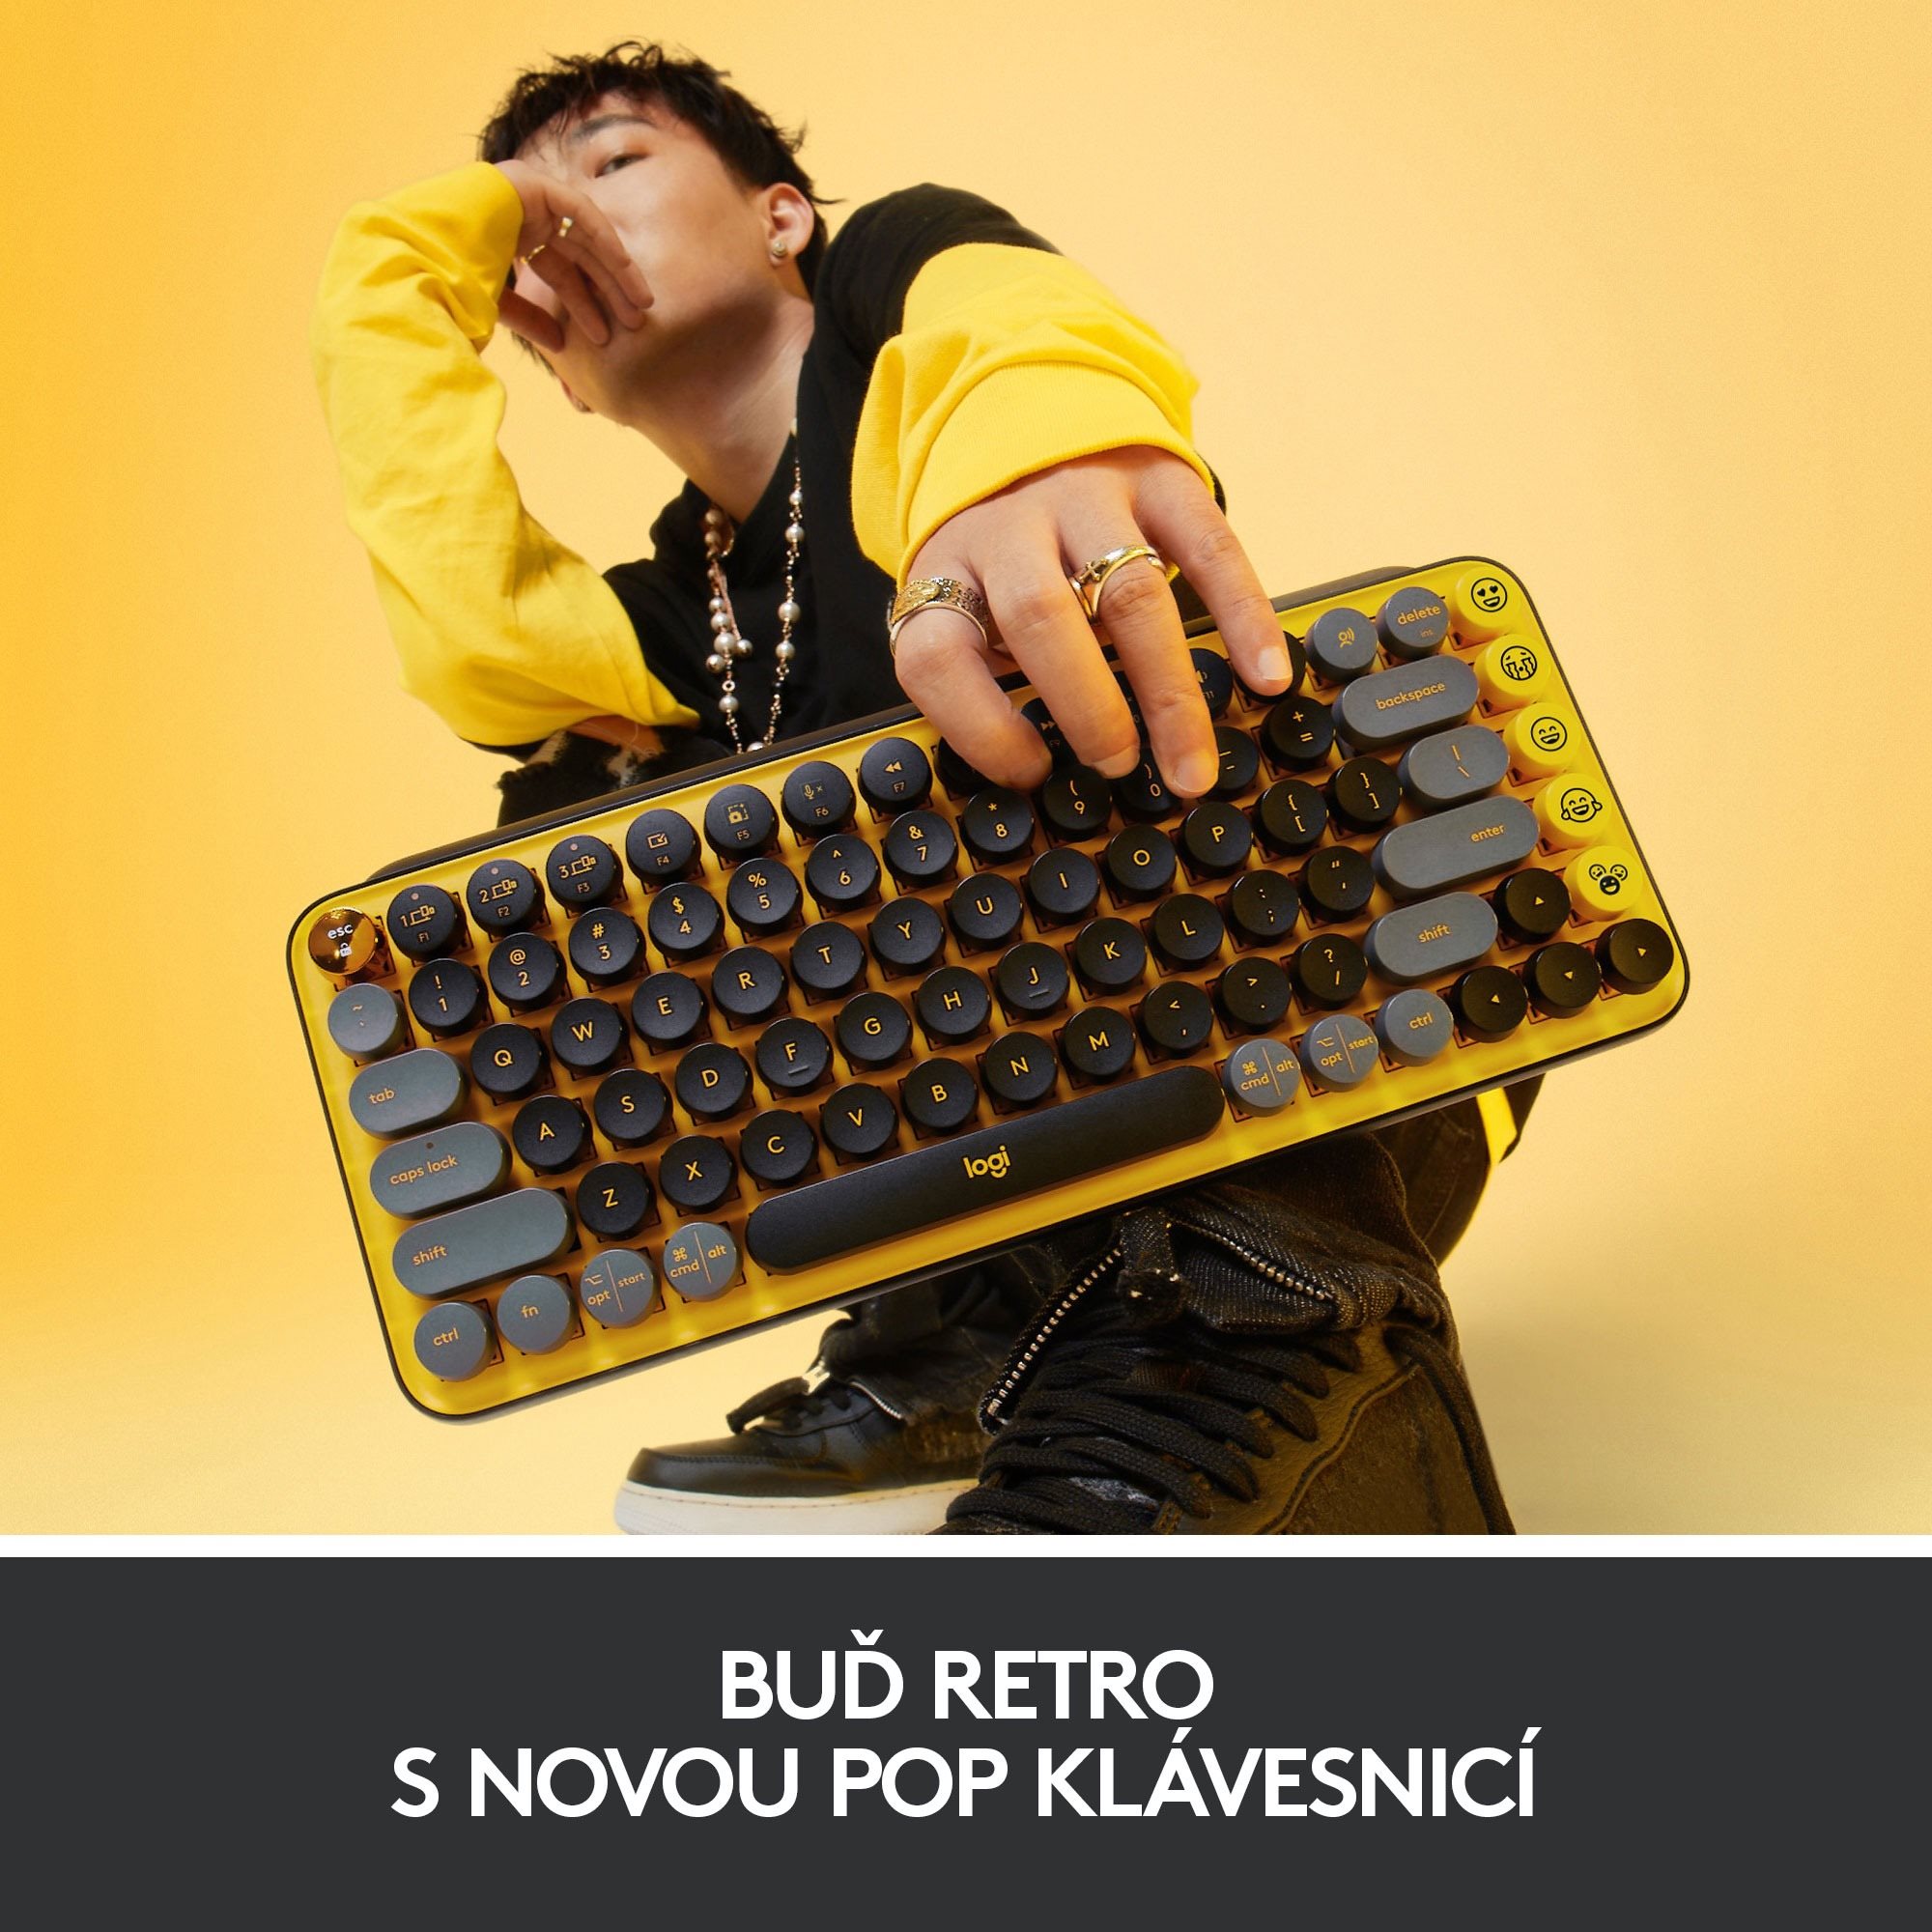 Keyboard Logitech Pop Keyboard Blast Features/technology